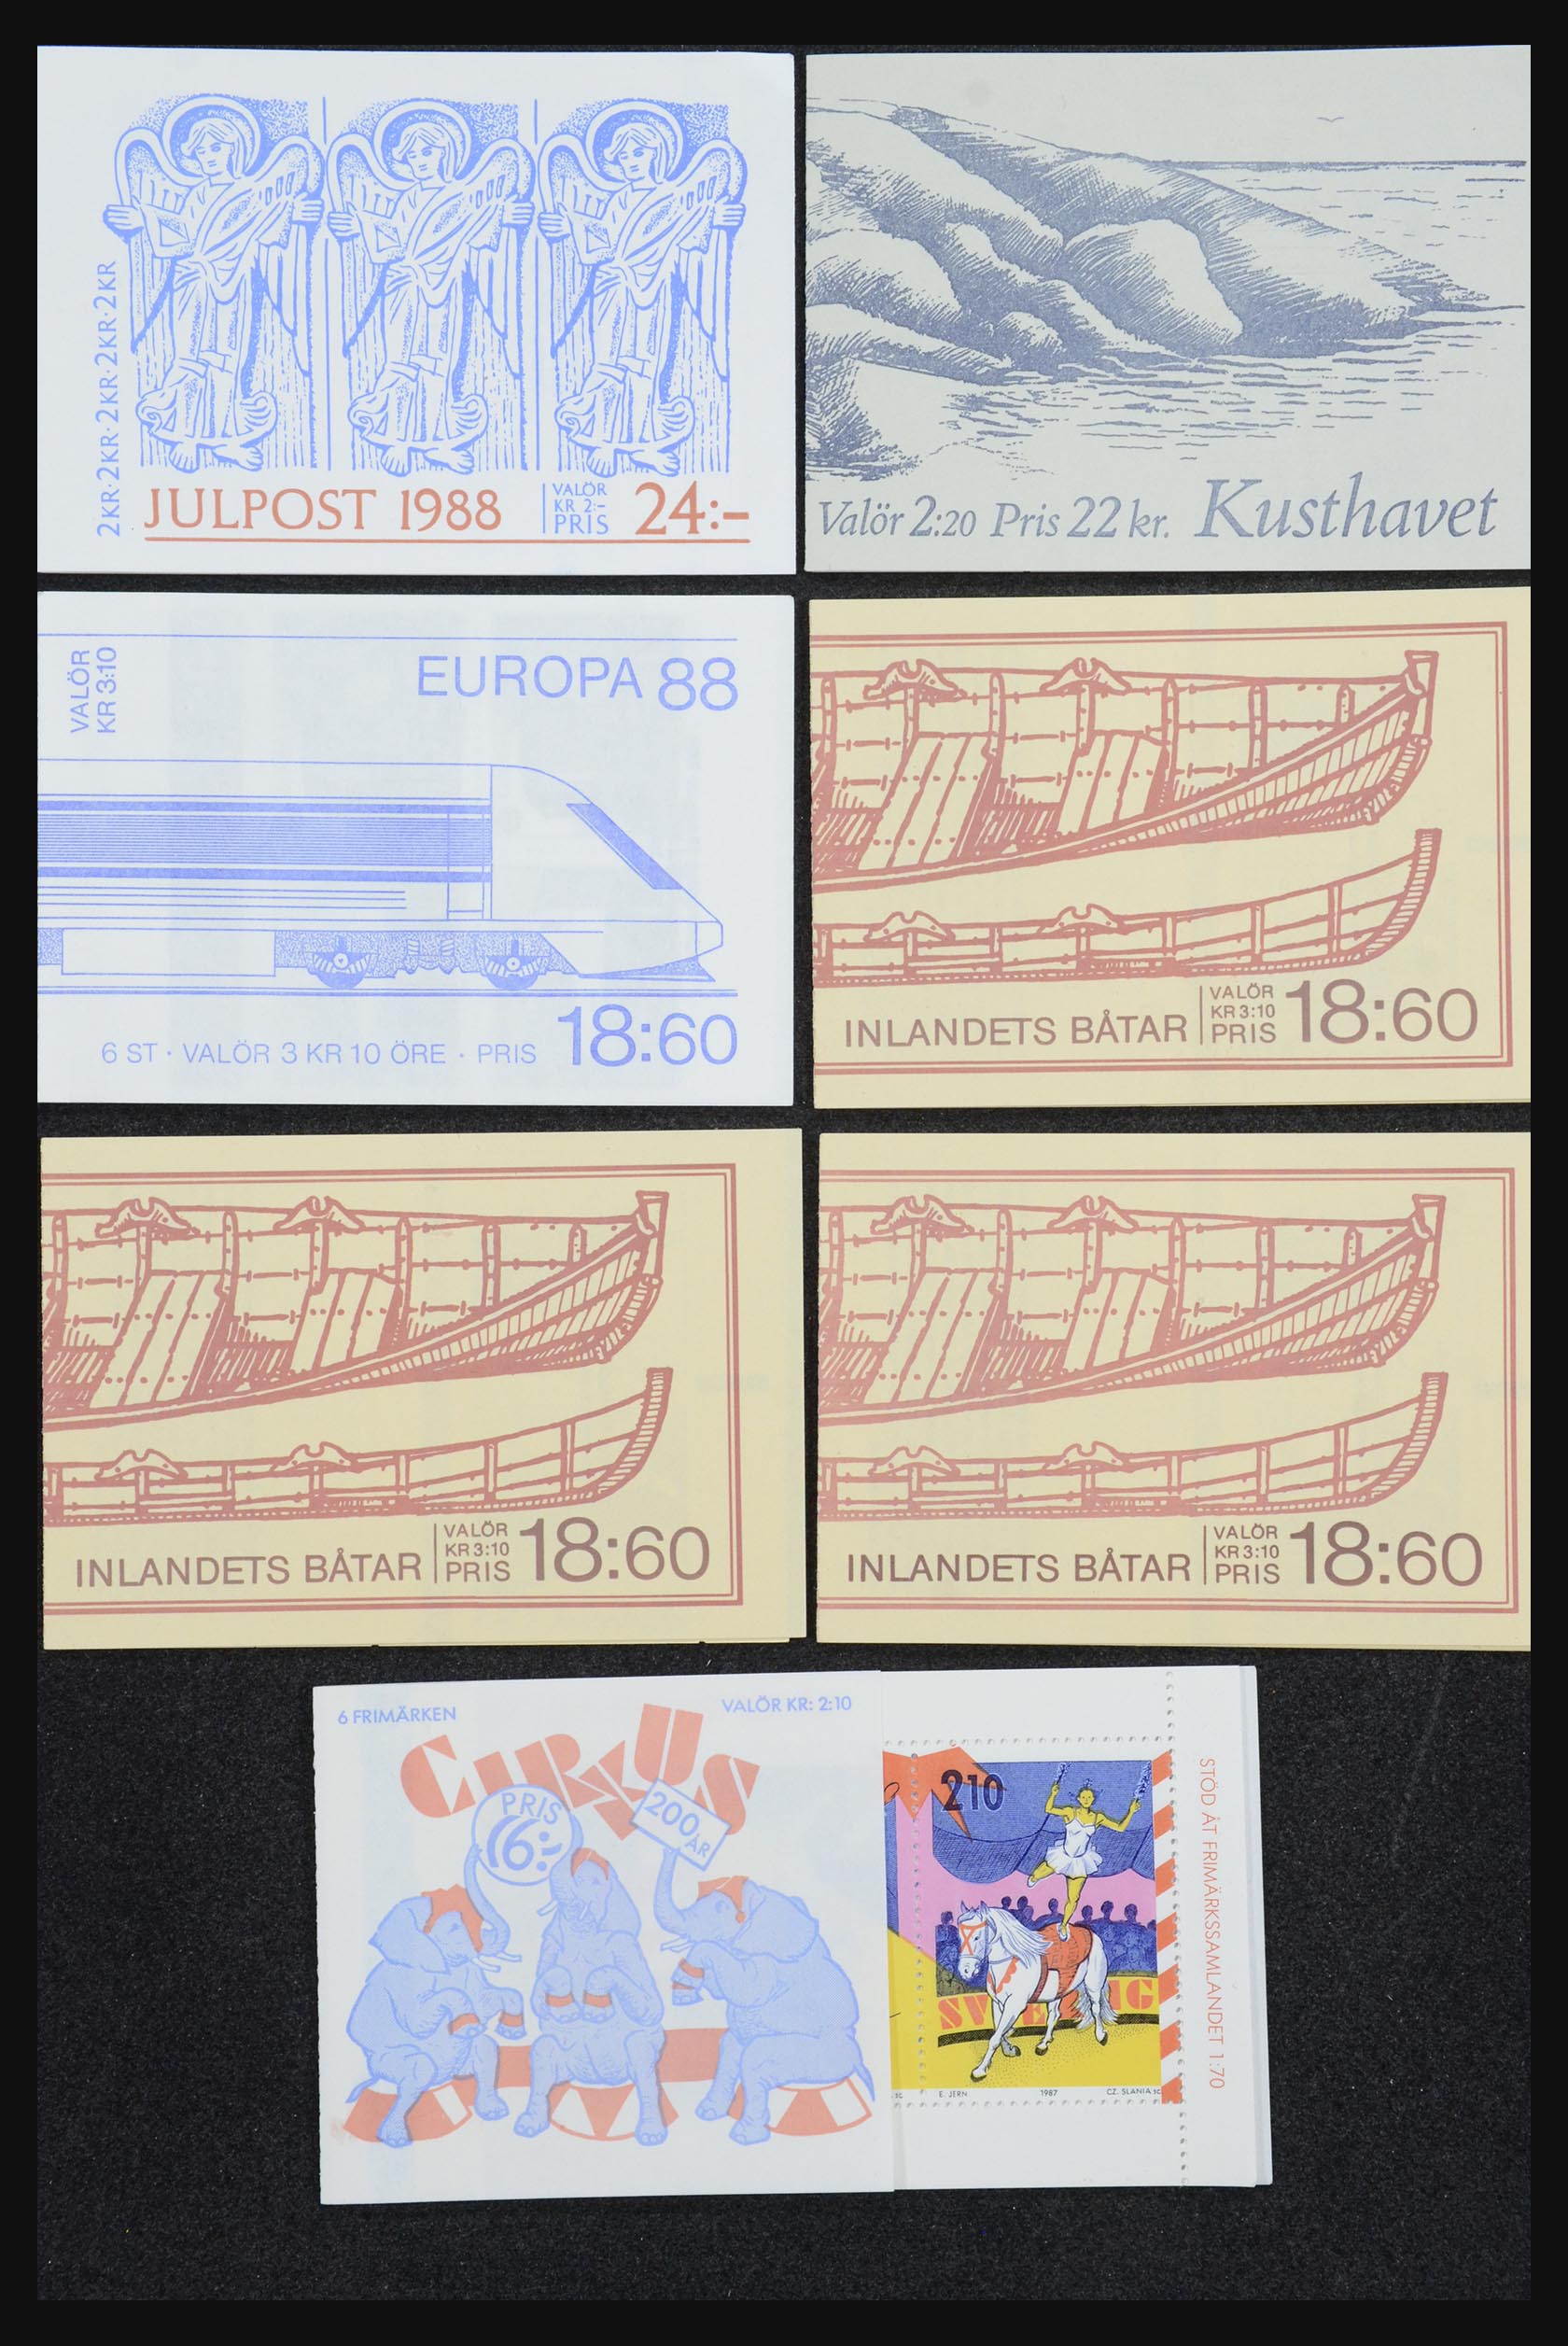 32026 046 - 32026 Sweden stampbooklets 1949-1990.